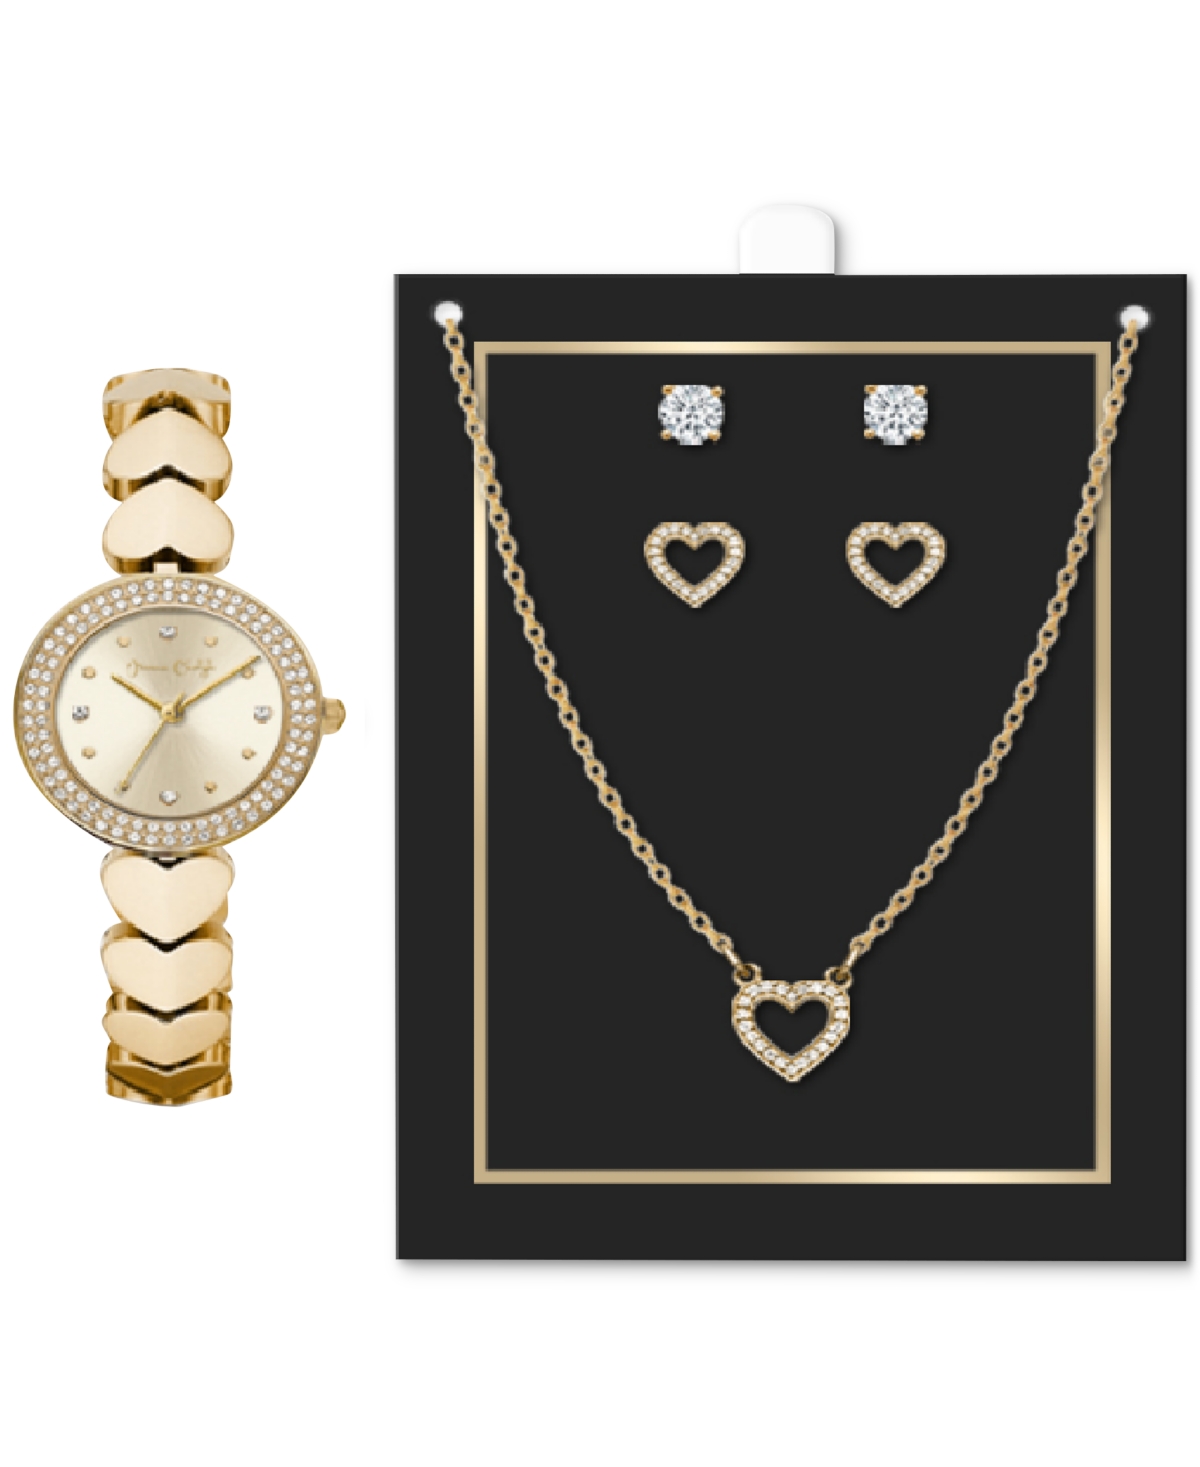 Women's Heart-Link Bracelet Watch 28mm Jewelry Gift Set - Rose Gold